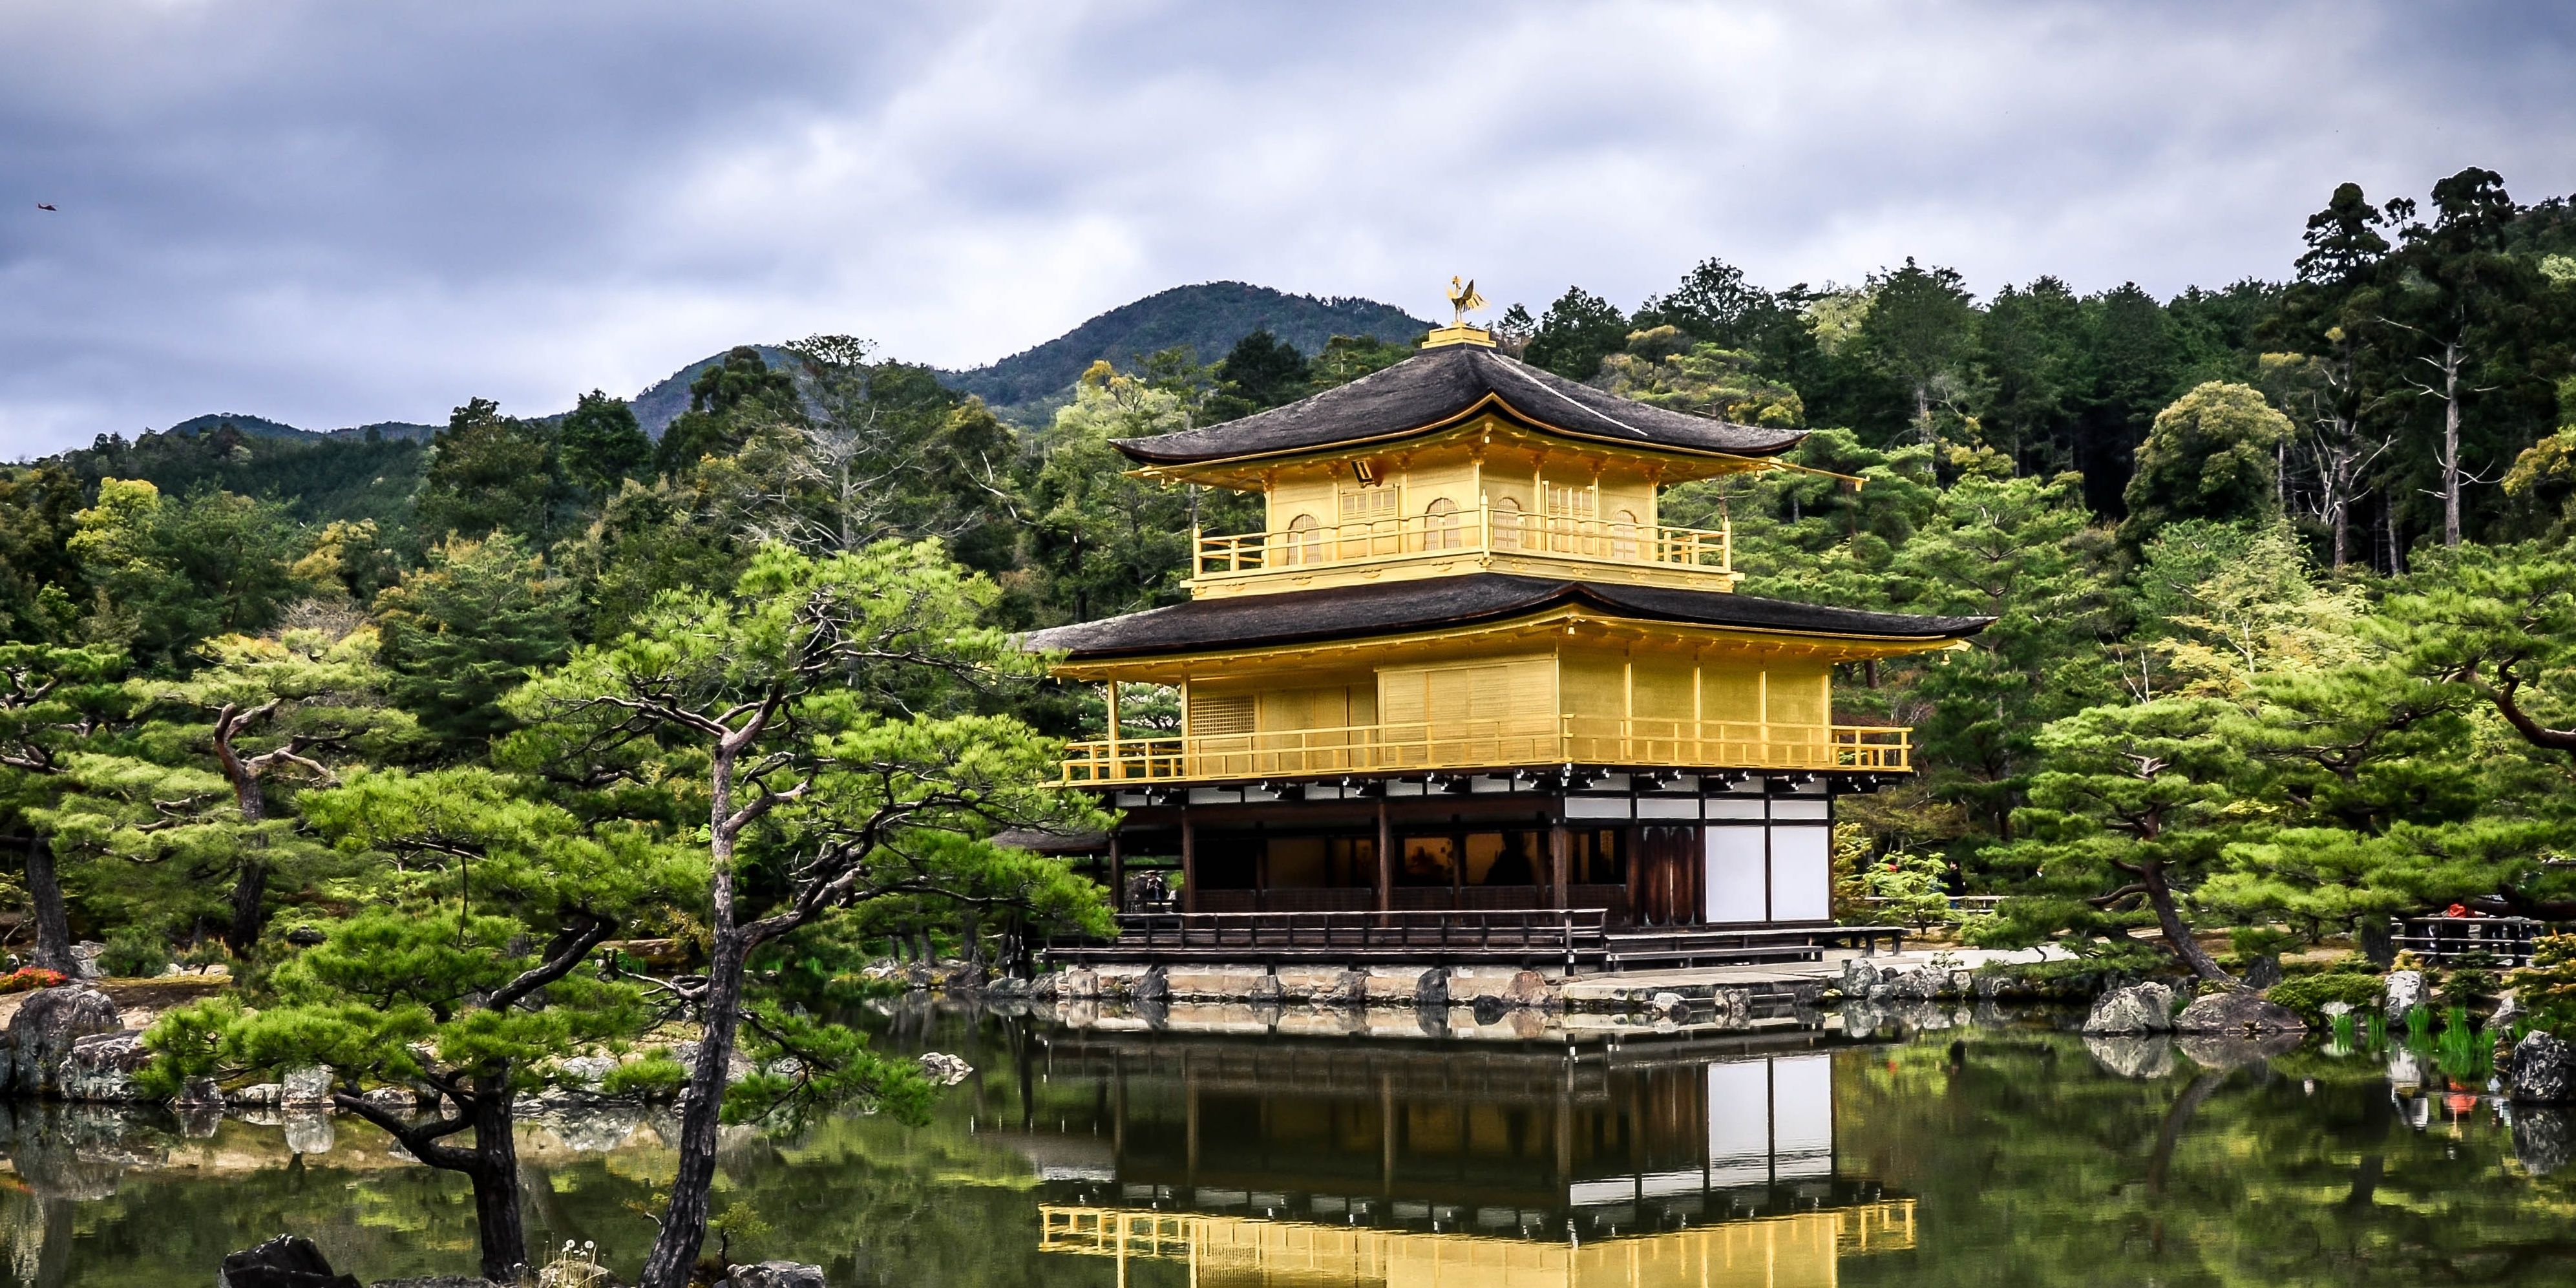 The Golden Pavillion in Kyoto, Japan.